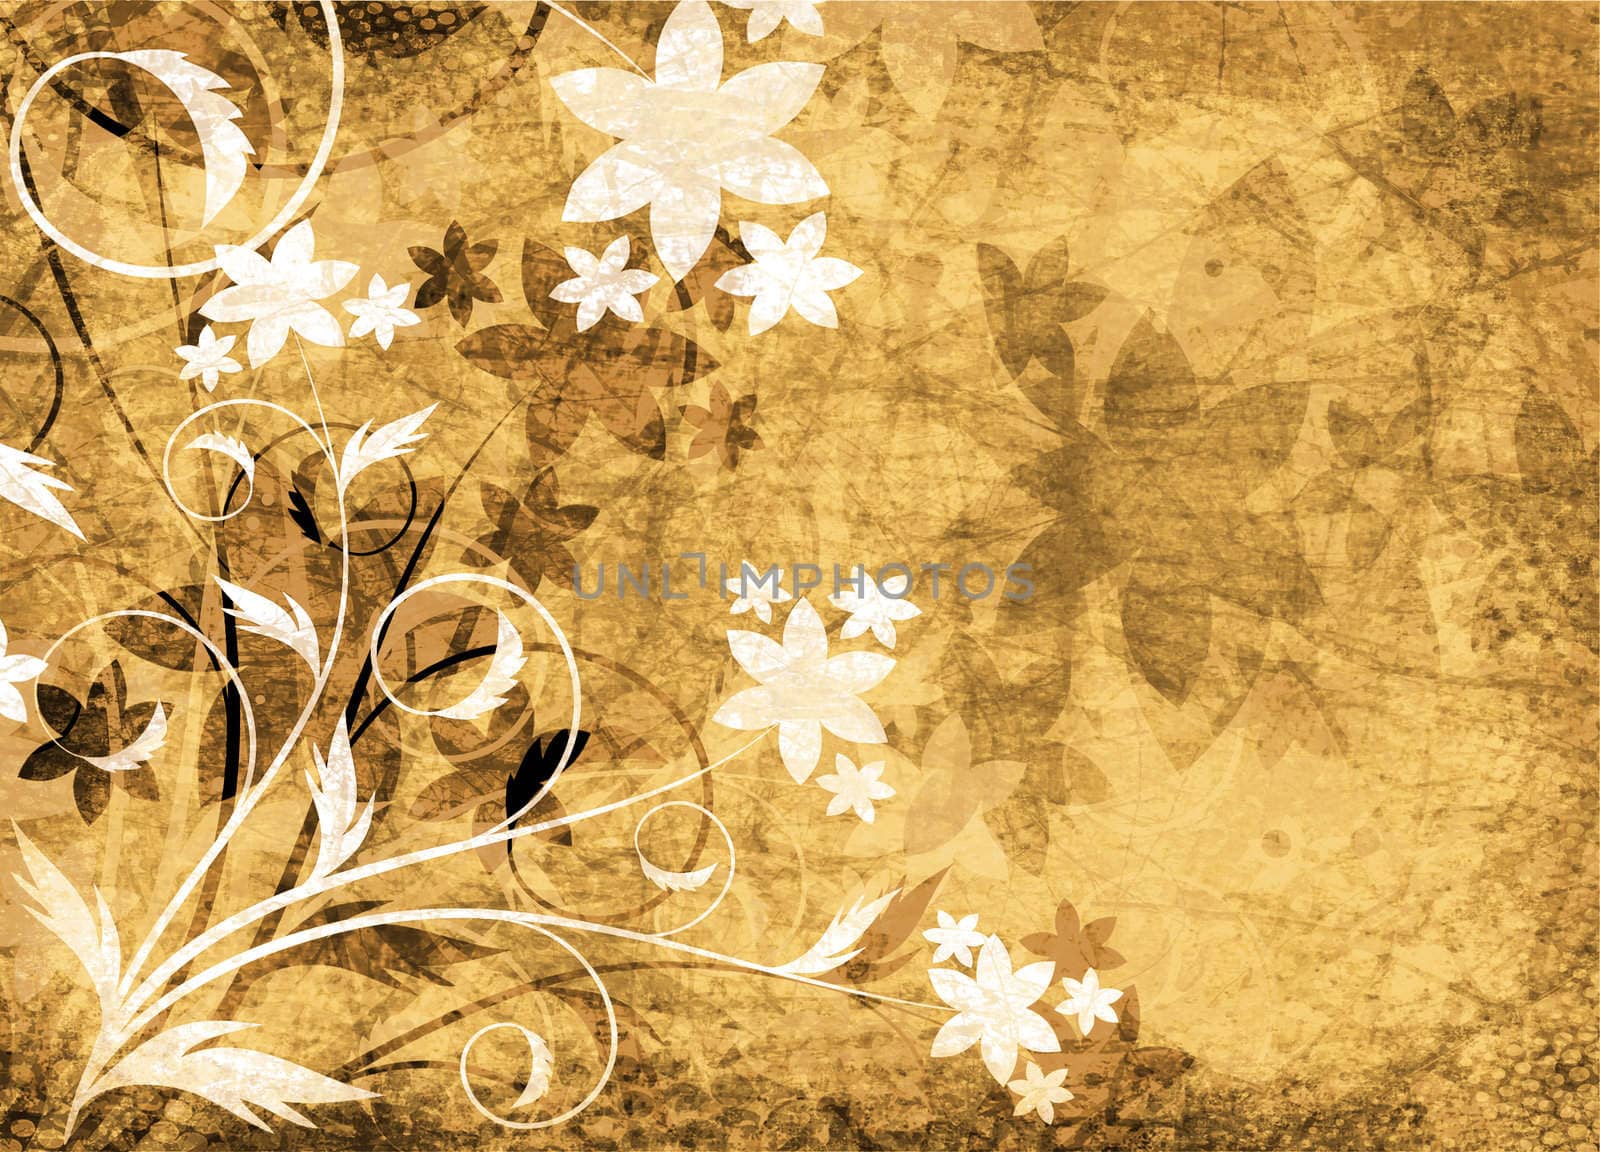 floral design on grunge background